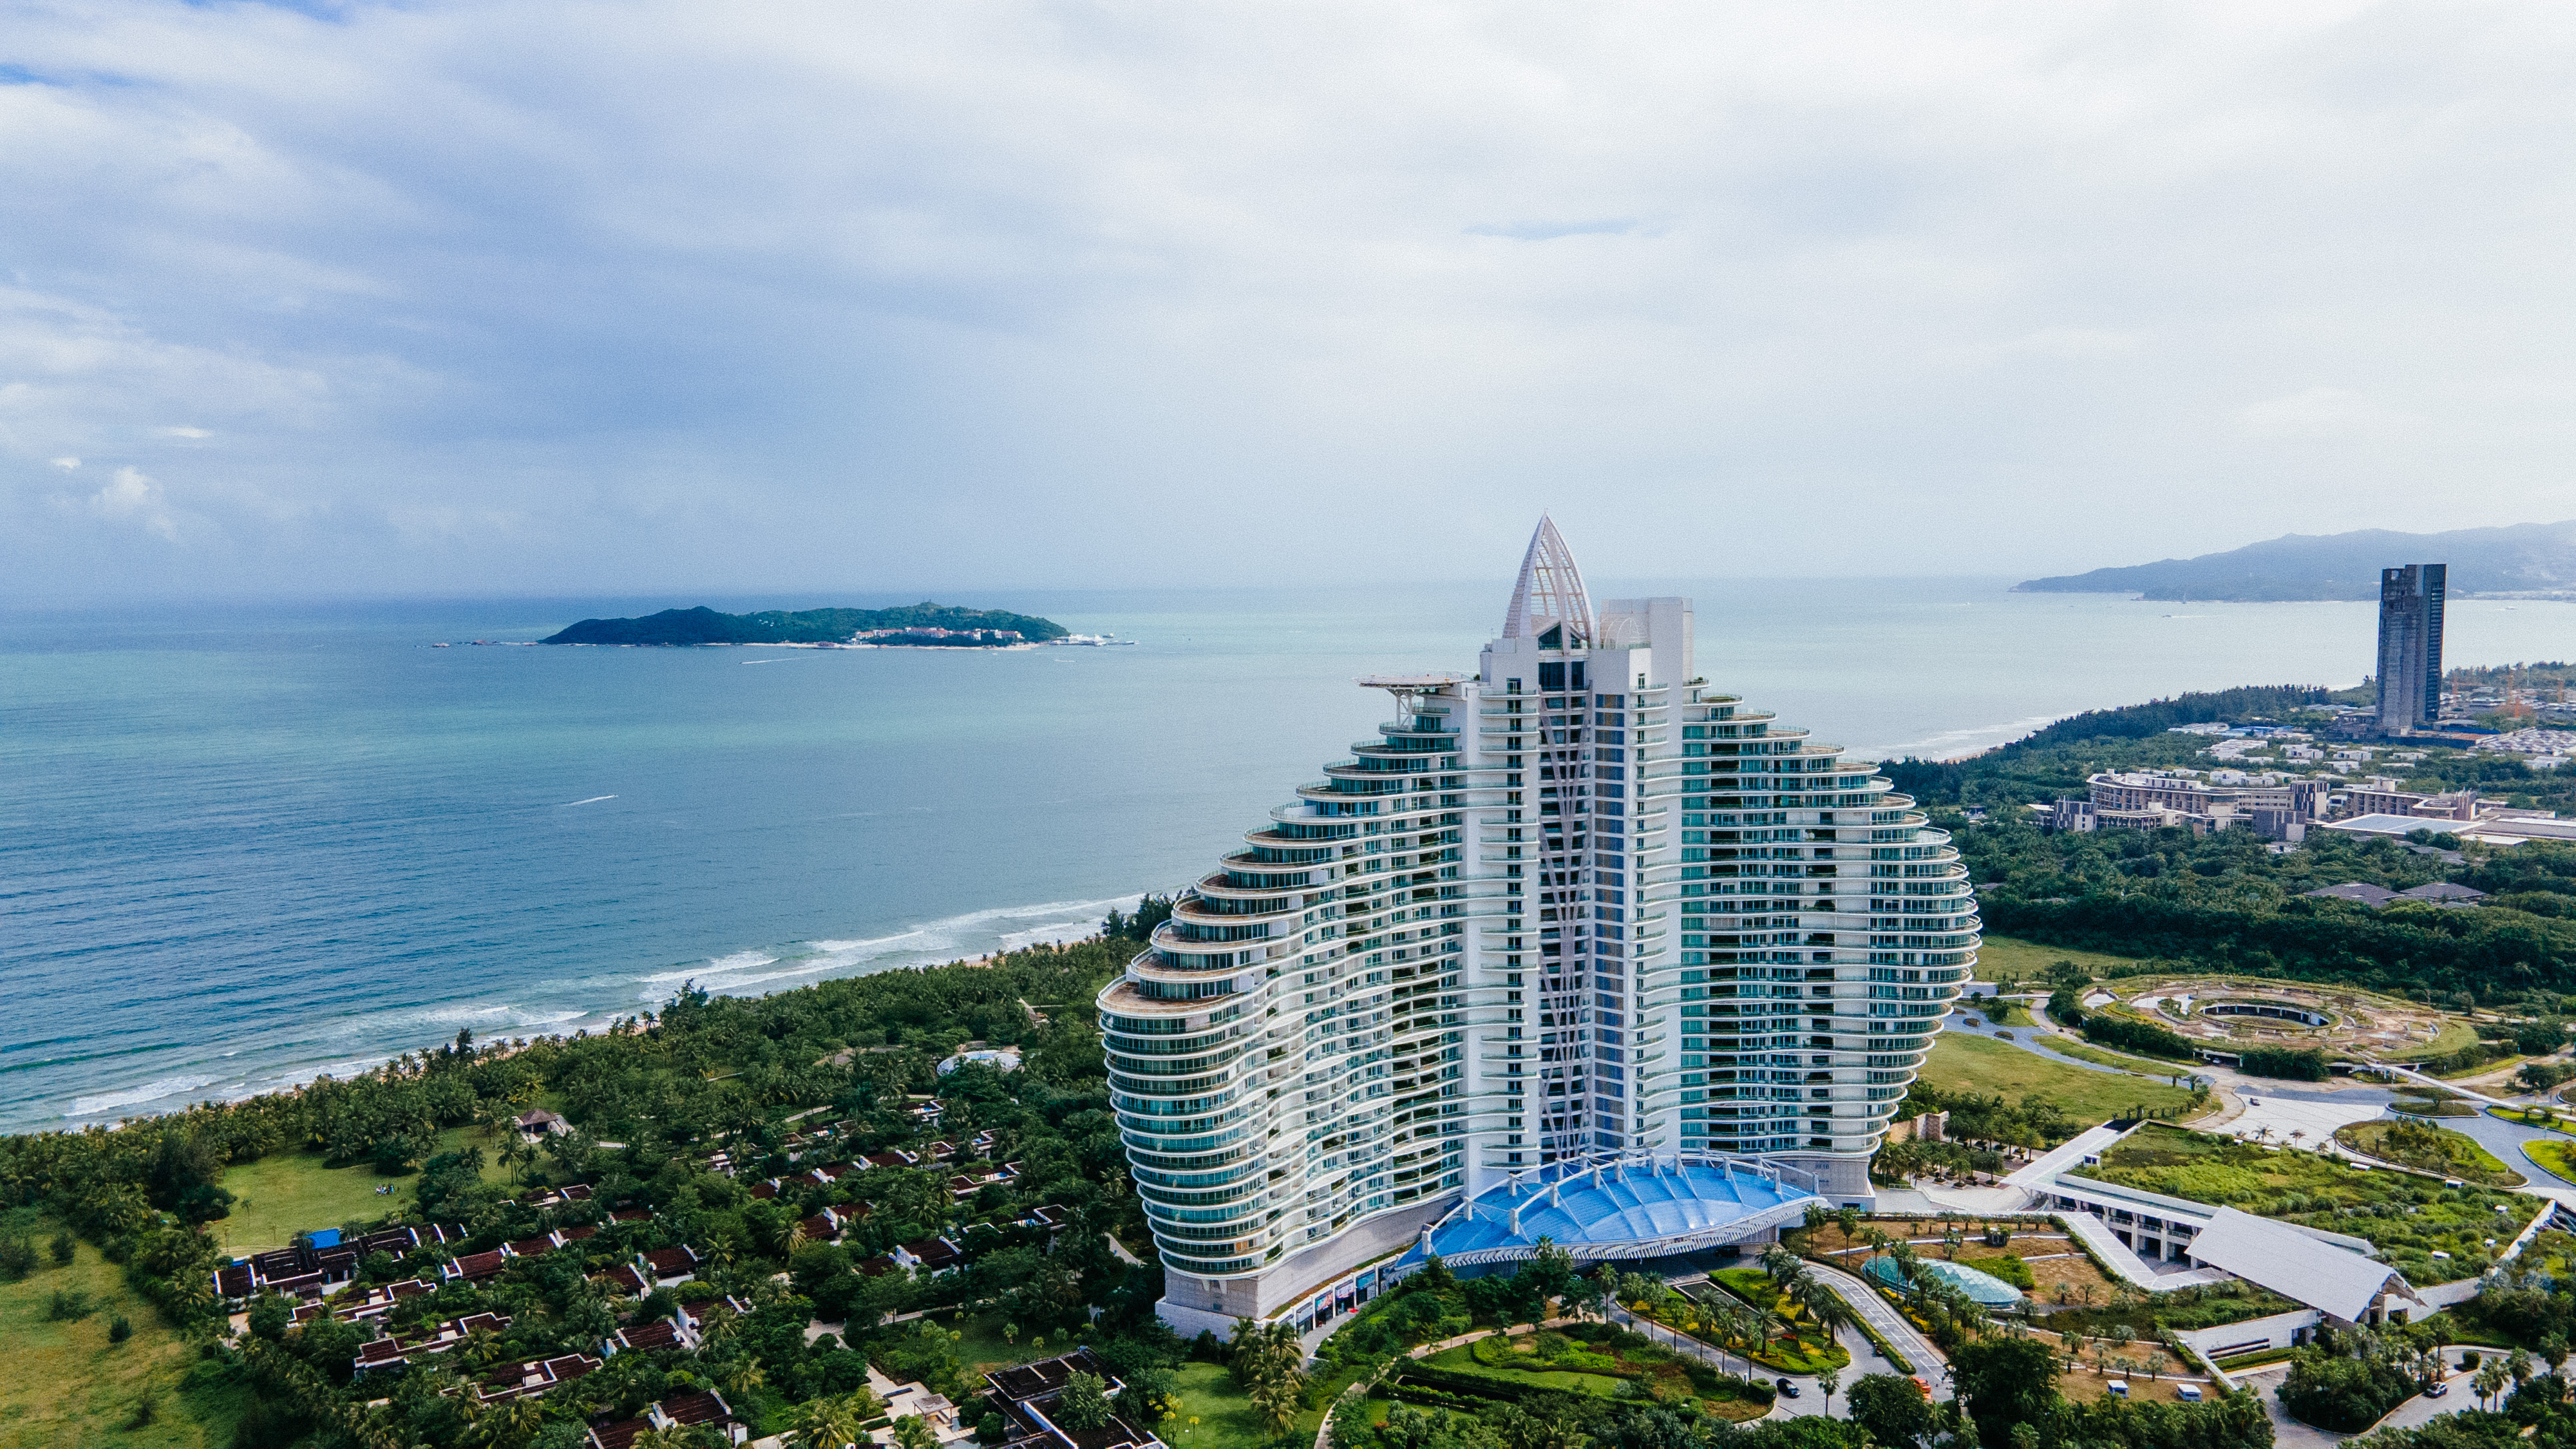 旋的海棠湾,建筑外型与迪拜帆船酒店一脉相承,被视为三亚新晋打卡之地